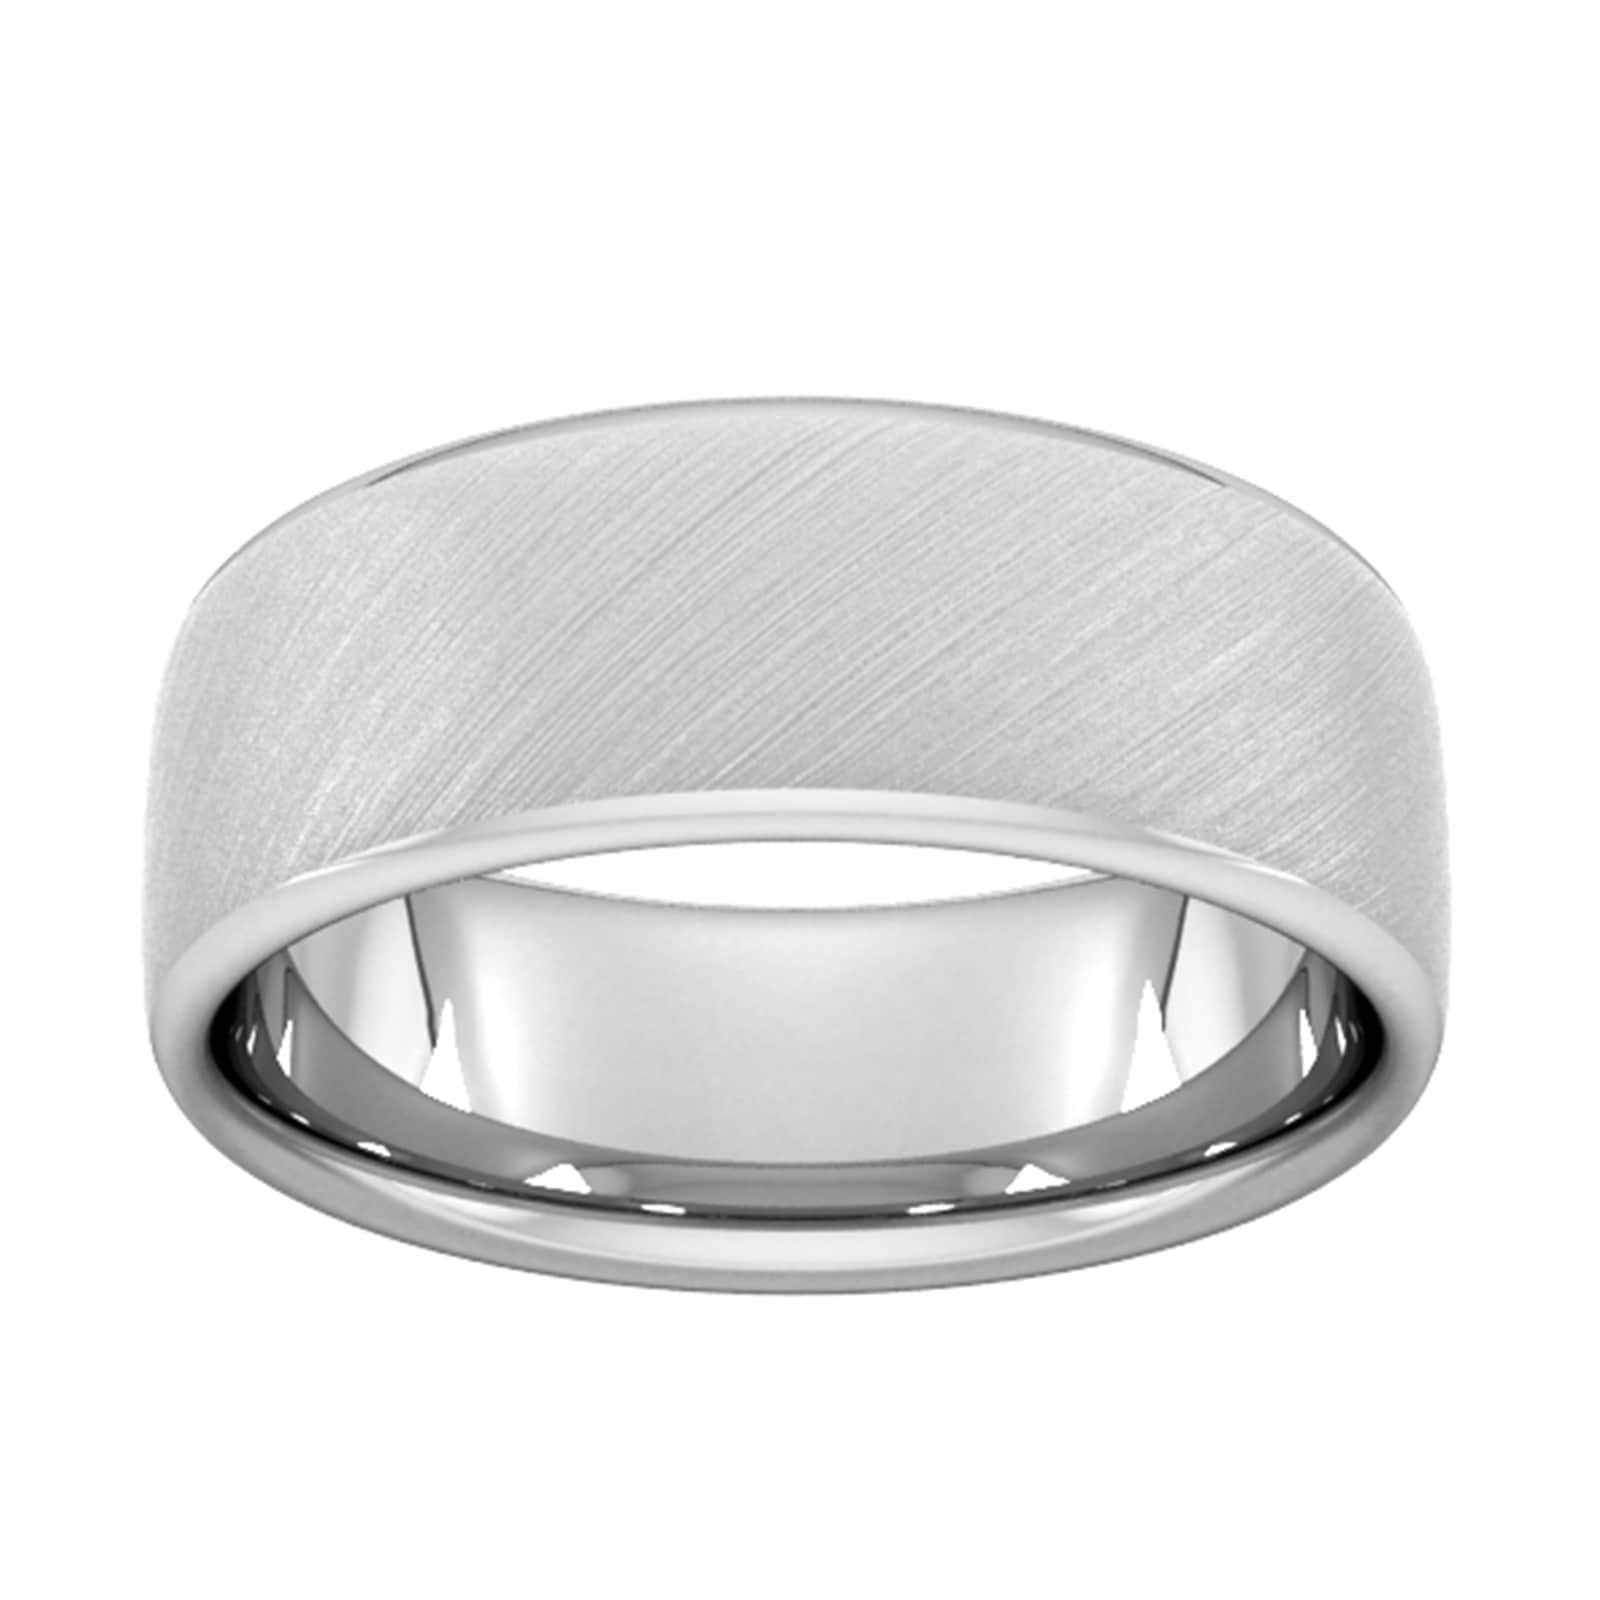 8mm Slight Court Standard Diagonal Matt Finish Wedding Ring In Platinum - Ring Size Y